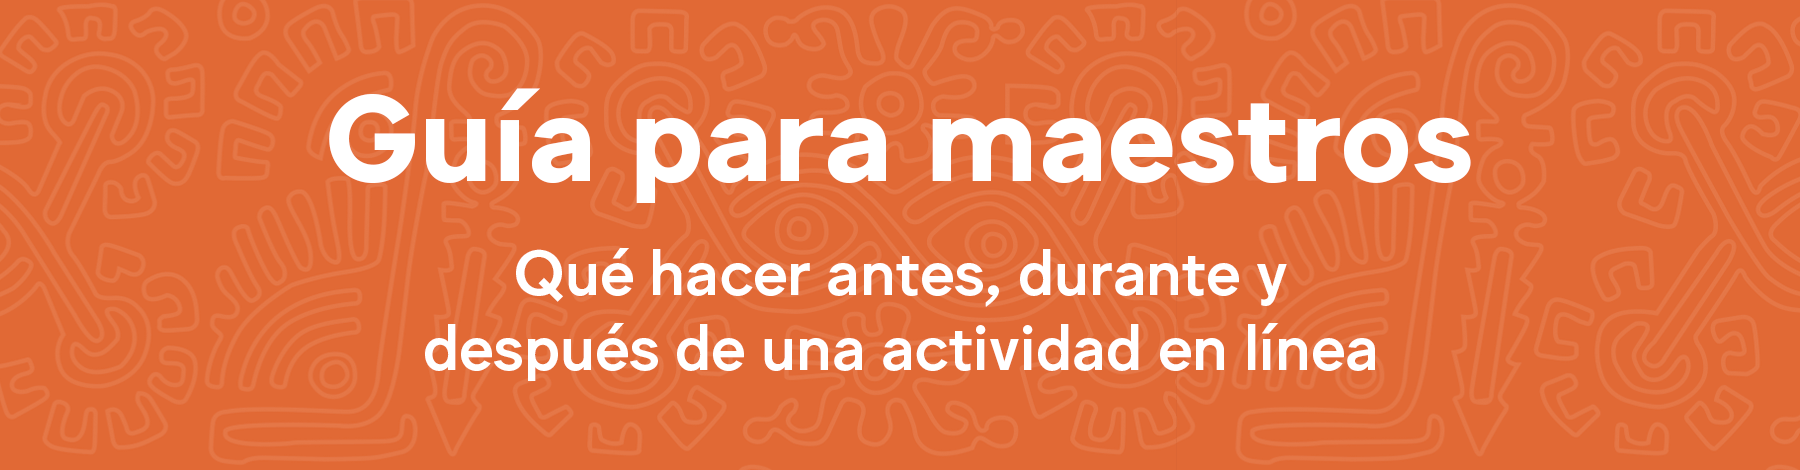 Herramientas para profesores | Museo Amparo, Puebla | Museo Amparo, Puebla.